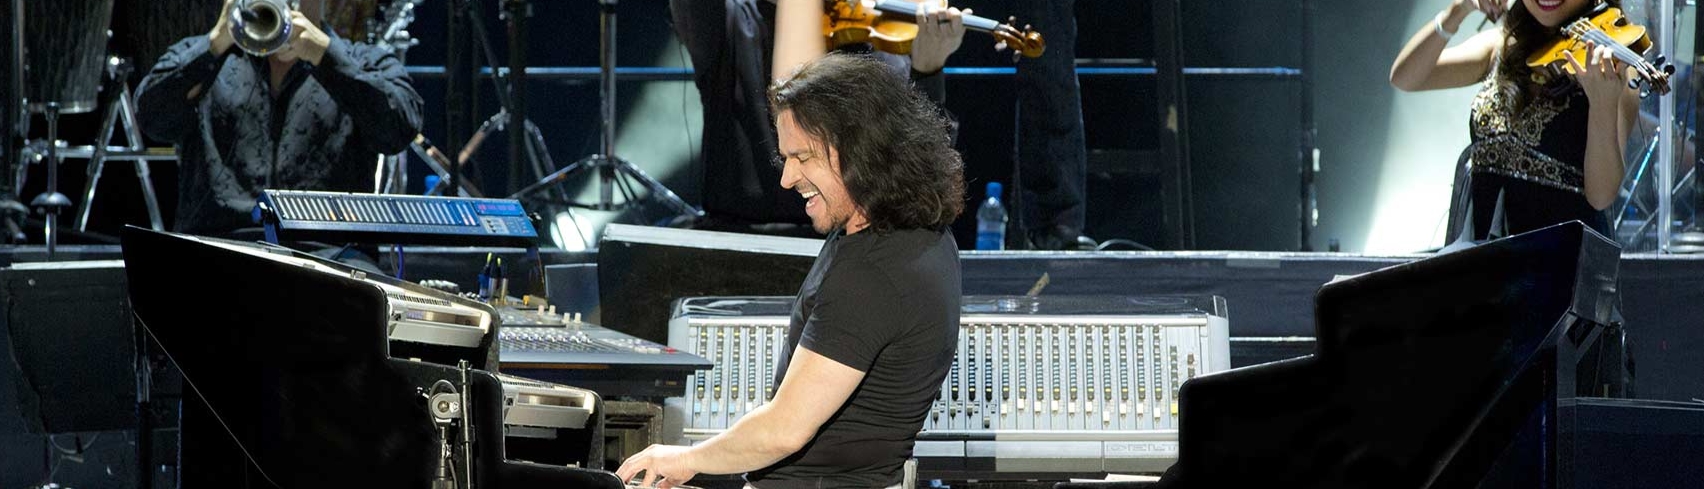 Los músicos de Yanni y las Melodías de Yanni: La música clásica contemporánea en su máximo esplendor